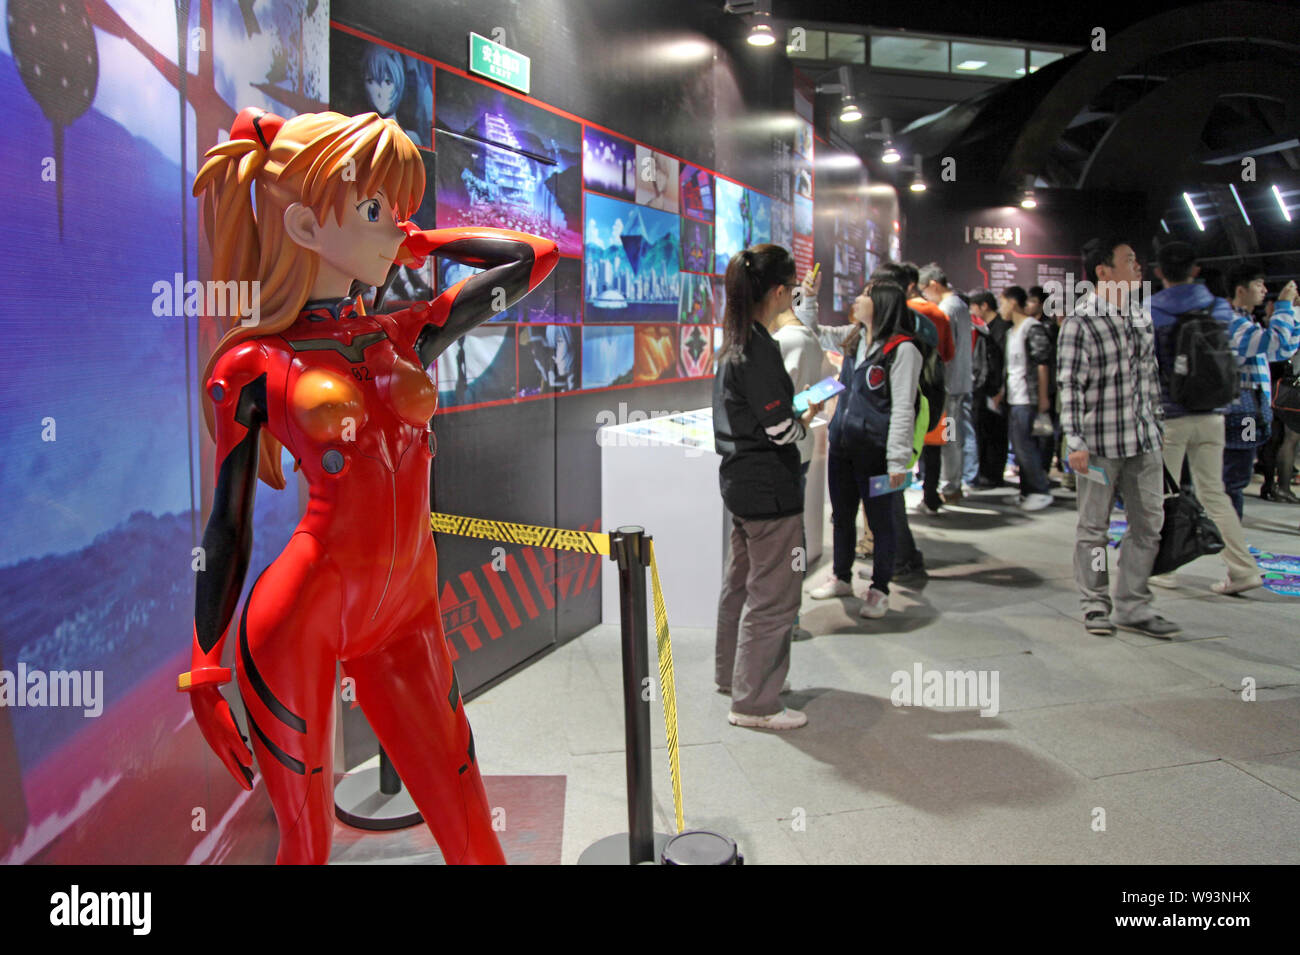 Un modèle grandeur nature d'Asuka Langley Soryu, un personnage de la série animée Neon Genesis Evangelion, est affiché pendant l'Expo, à l'EVA Banque D'Images